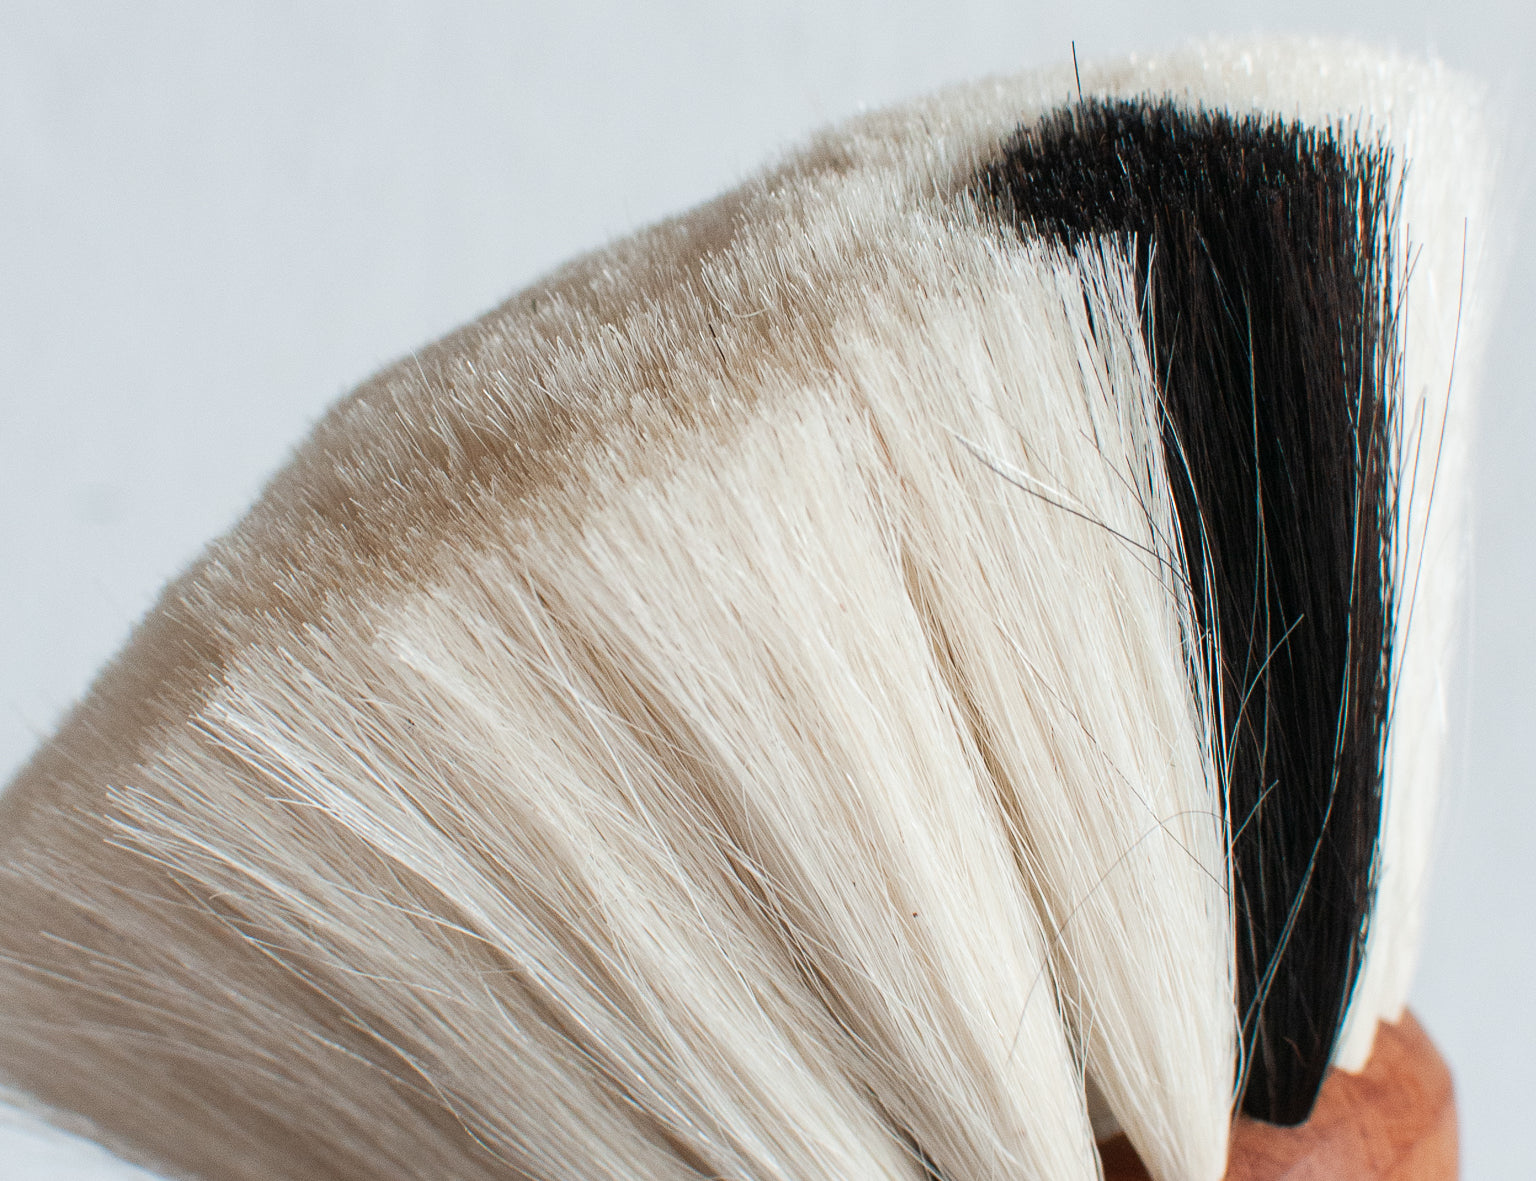 Redecker Oiled Pearwood Dust Brush - White Goat's Hair